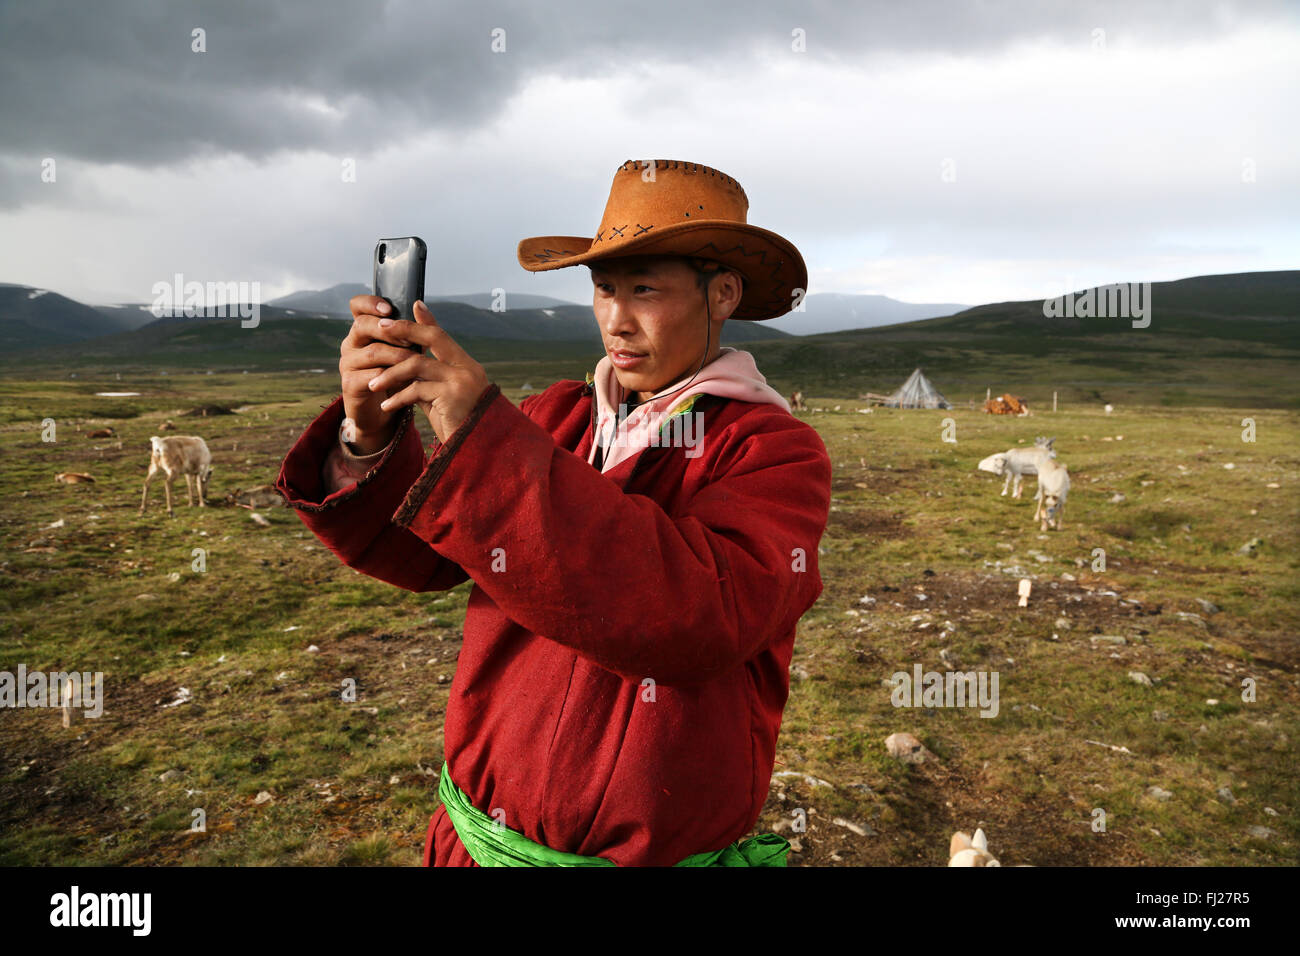 Faire de l'homme nomade Tsaatan Mongolie, selfies Banque D'Images